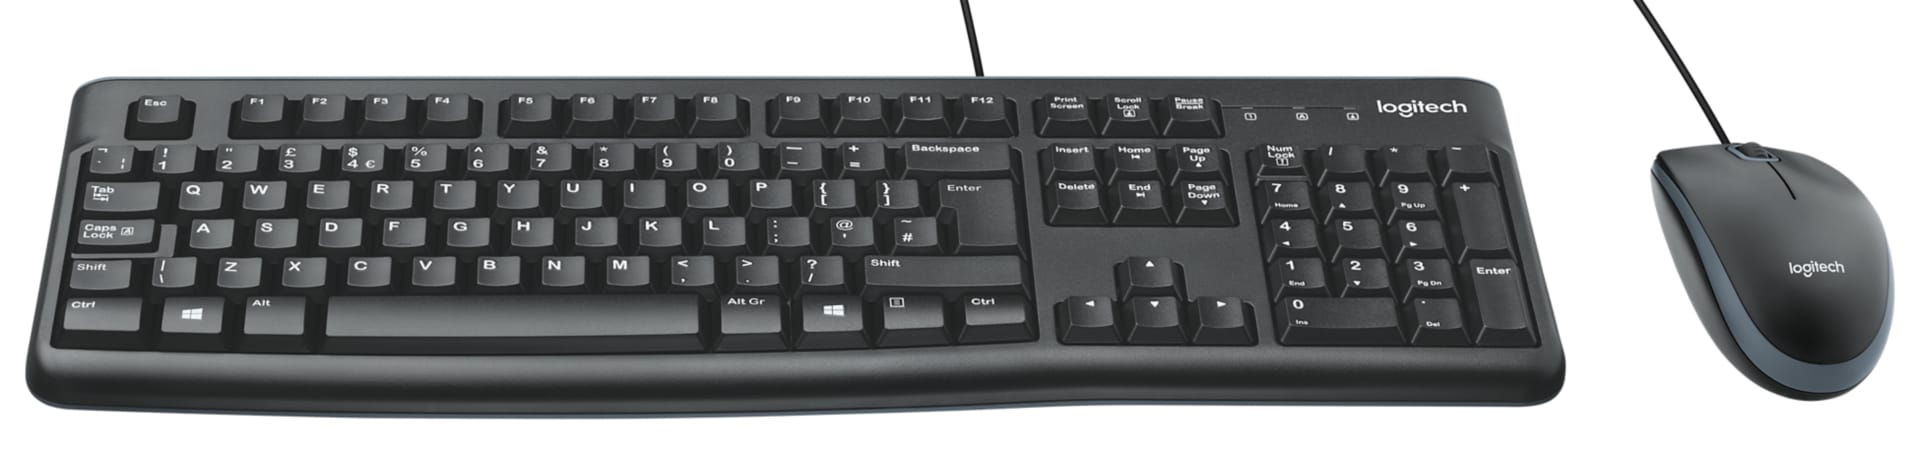 Logitech Wireless Wave Combo MK550 - keyboard and mouse set - English -  920-002555 - Keyboard & Mouse Bundles 